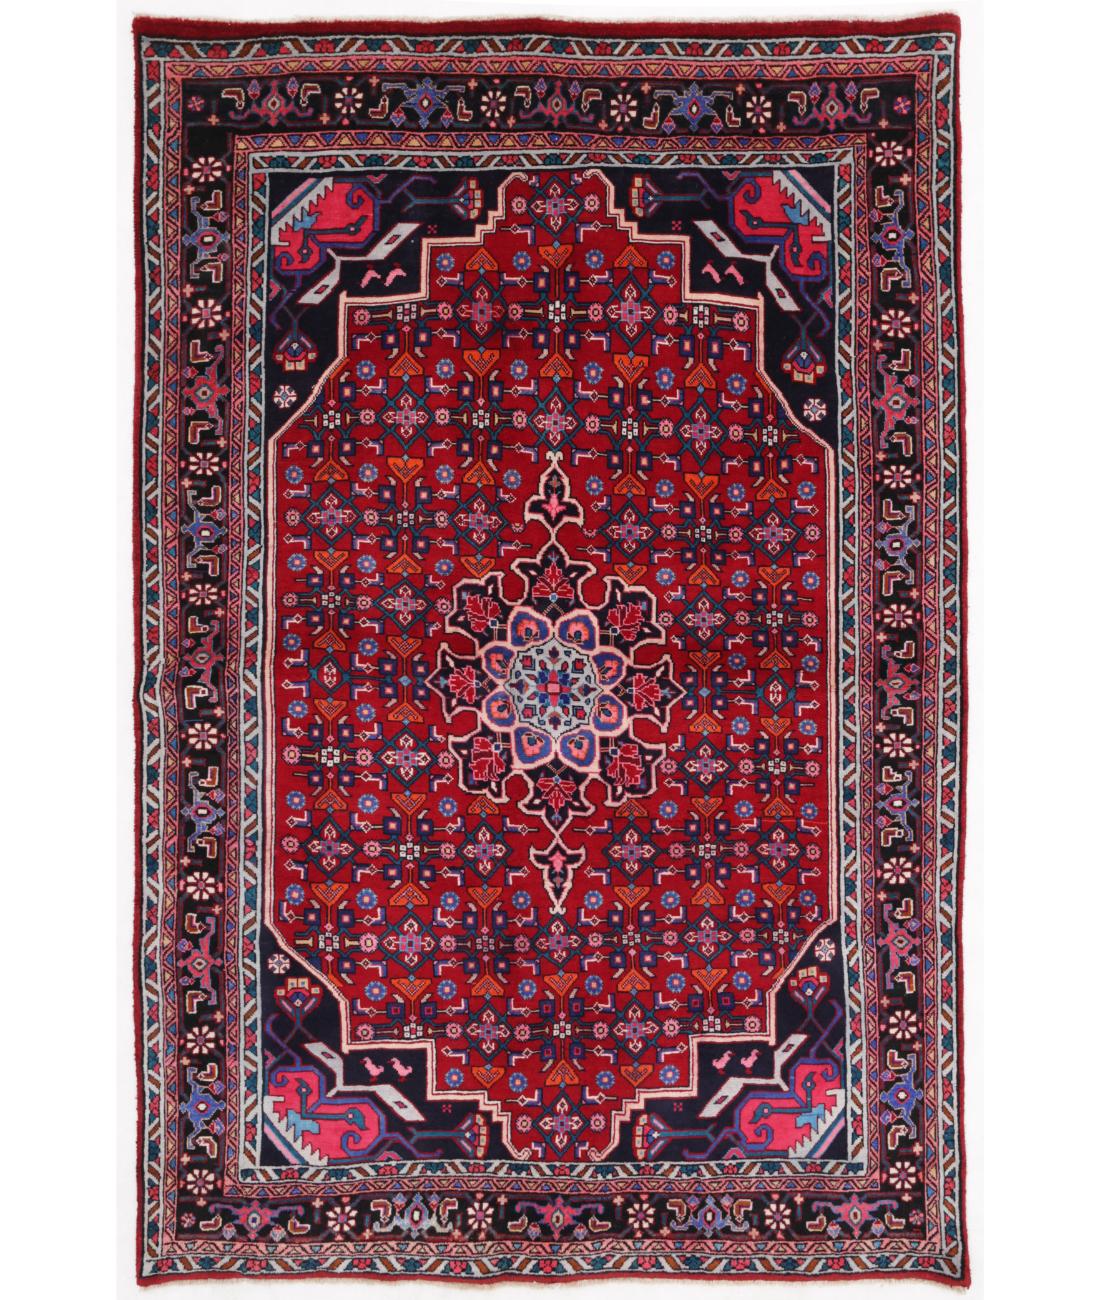 Hand Knotted Persian Bijar Wool Rug - 4'4'' x 6'7'' 4' 4" X 6' 7" ( 132 X 201 ) / Red / Black